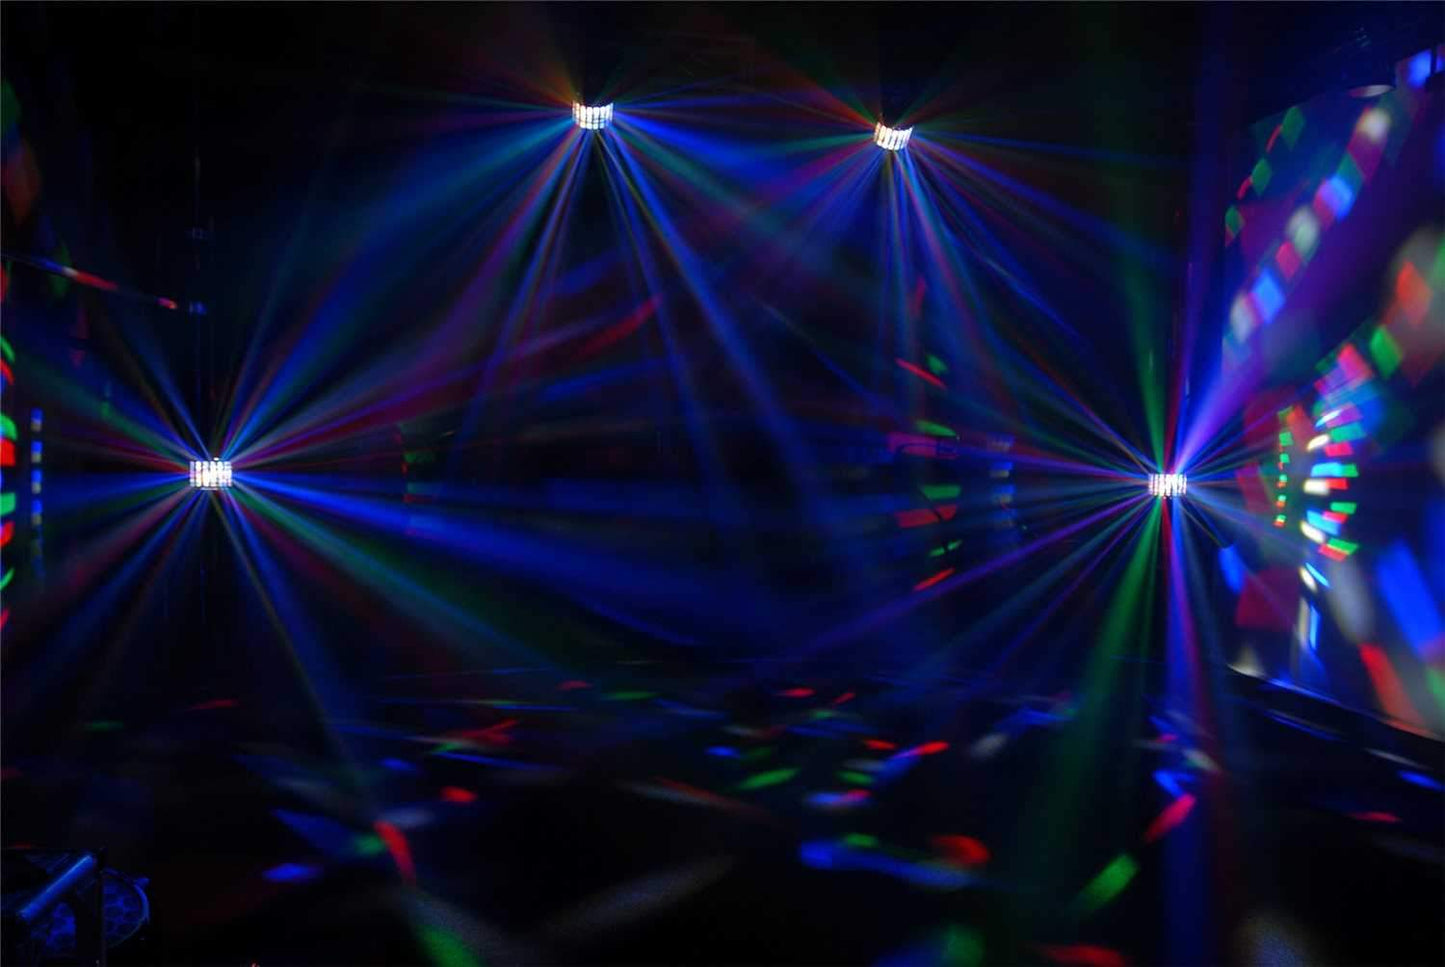 Chauvet Kinta FX Laser LED Effect Light 2-Pack - PSSL ProSound and Stage Lighting